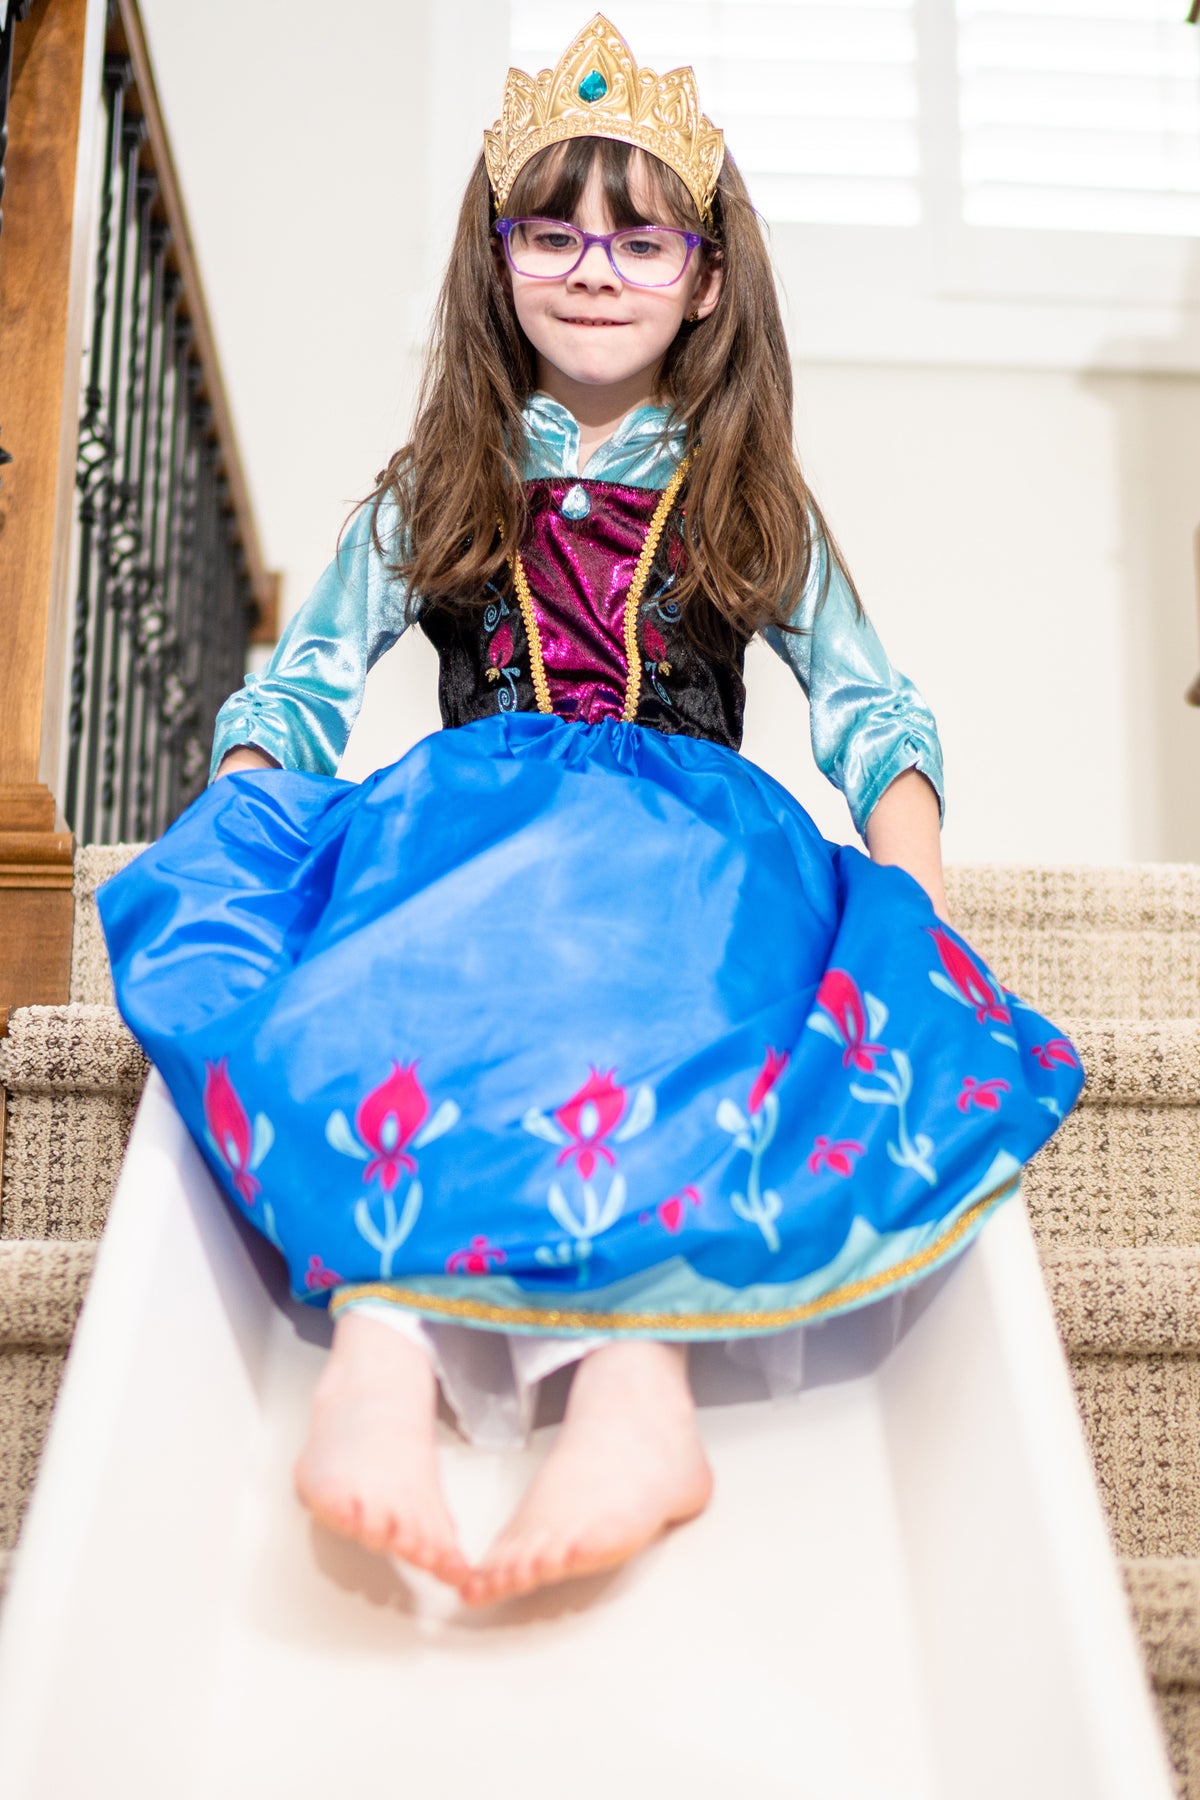 Alpine Princess Dress up Costume